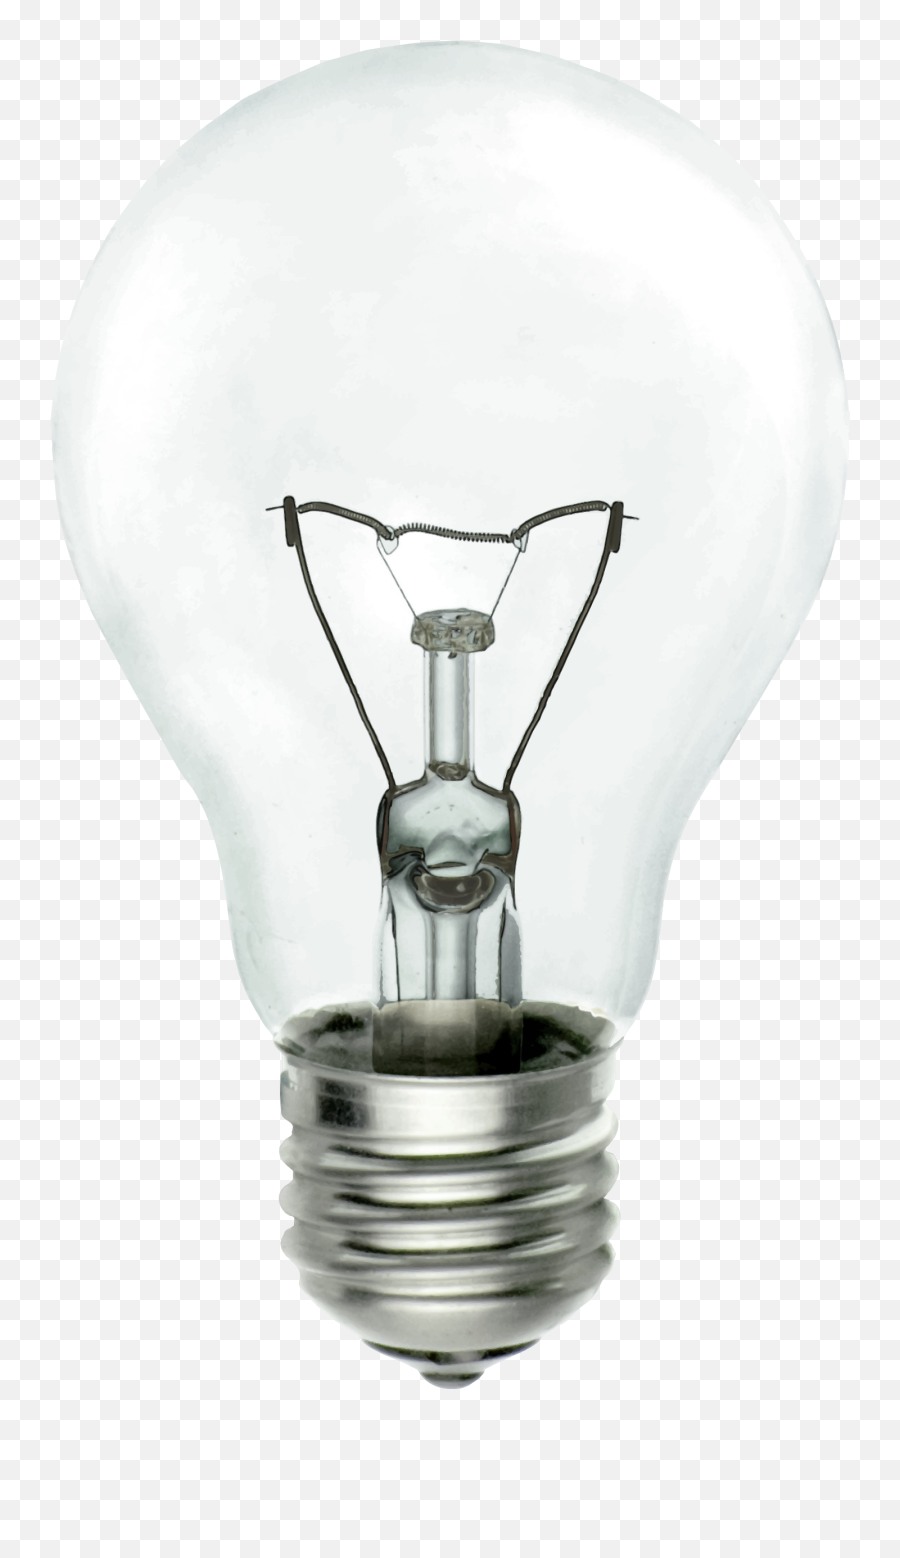 Incandescent Light Bulb - Incandescent Light Bulb Images For Download Emoji,Light Bulb Emoji Png